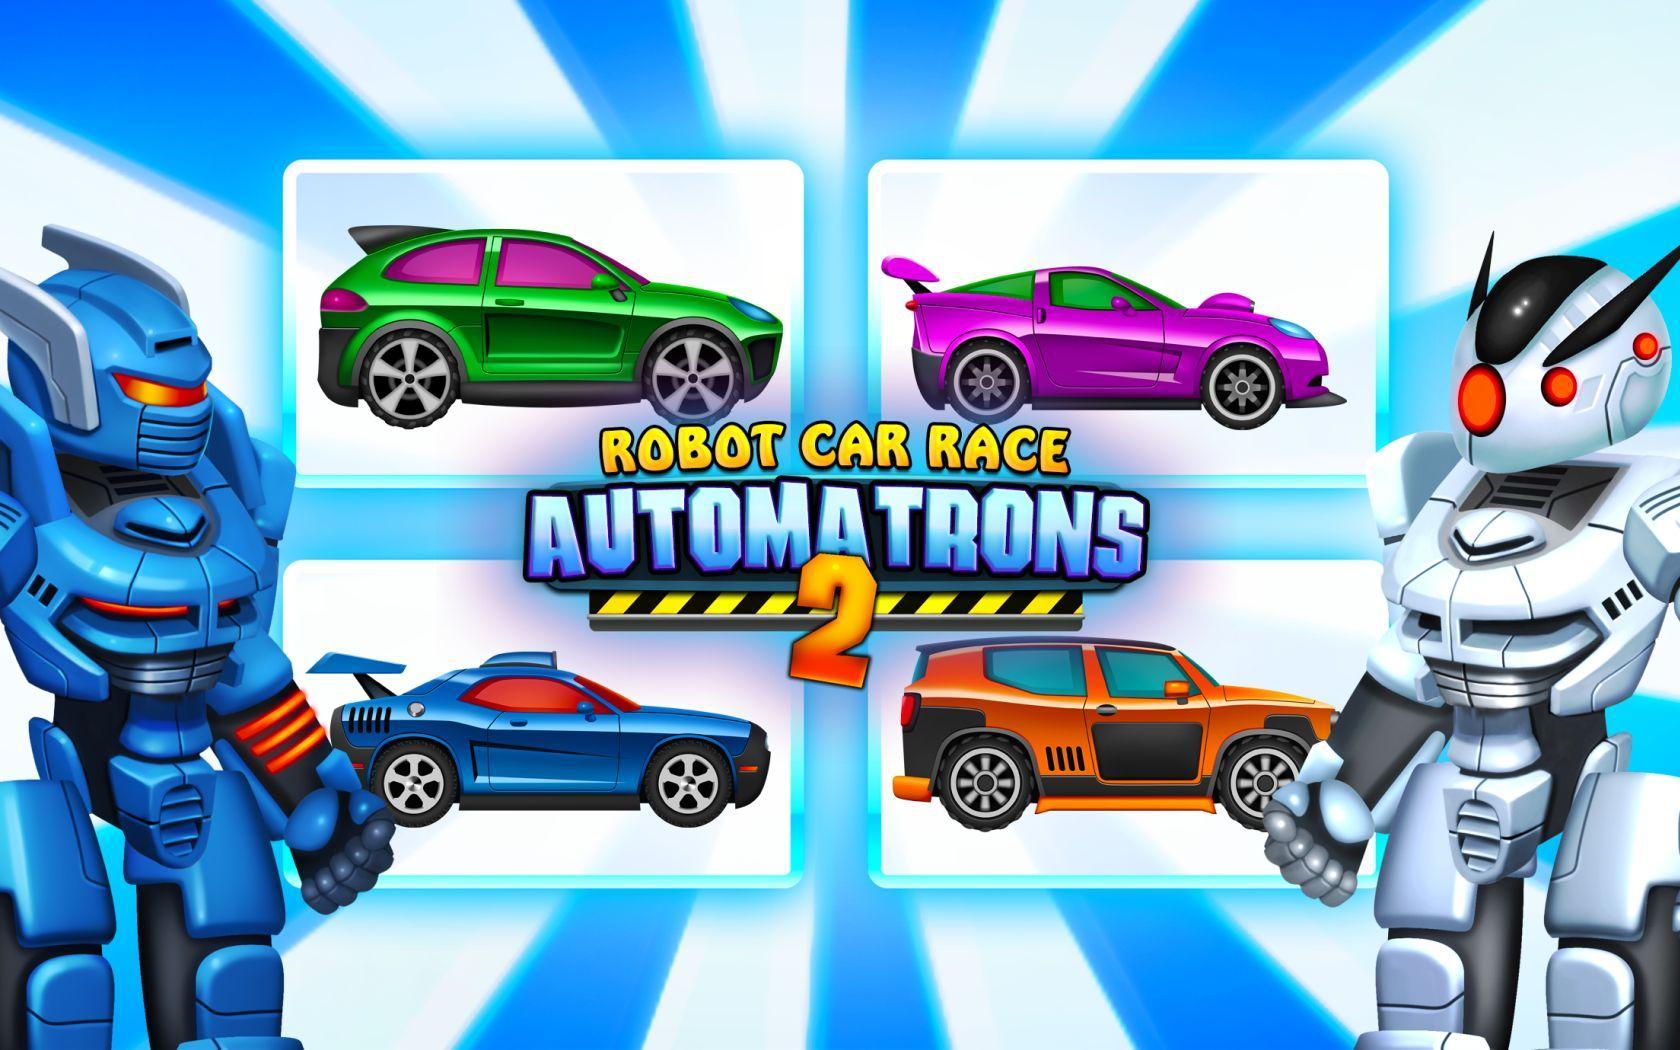 søvn Windswept Brug af en computer Скачать Automatrons 2: Robot Car Transformation Race Game APK для Android